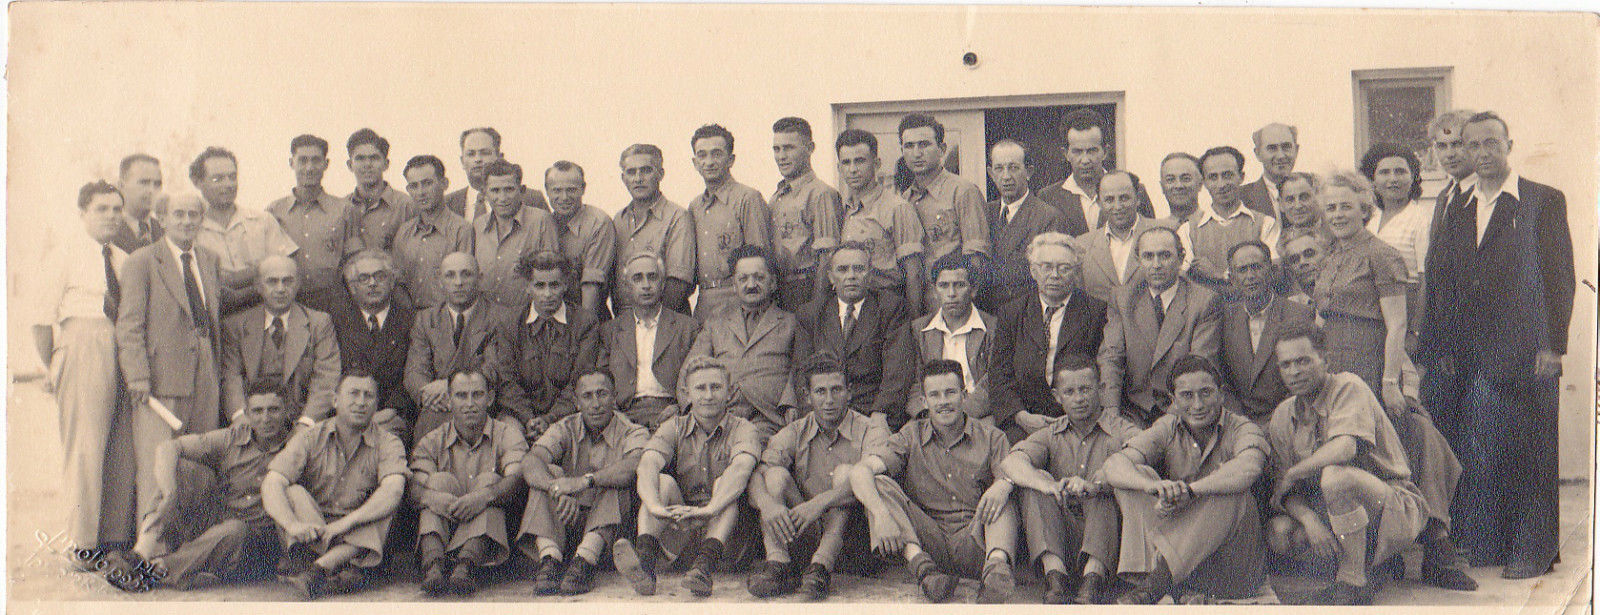 Team hapoel 1947.jpg